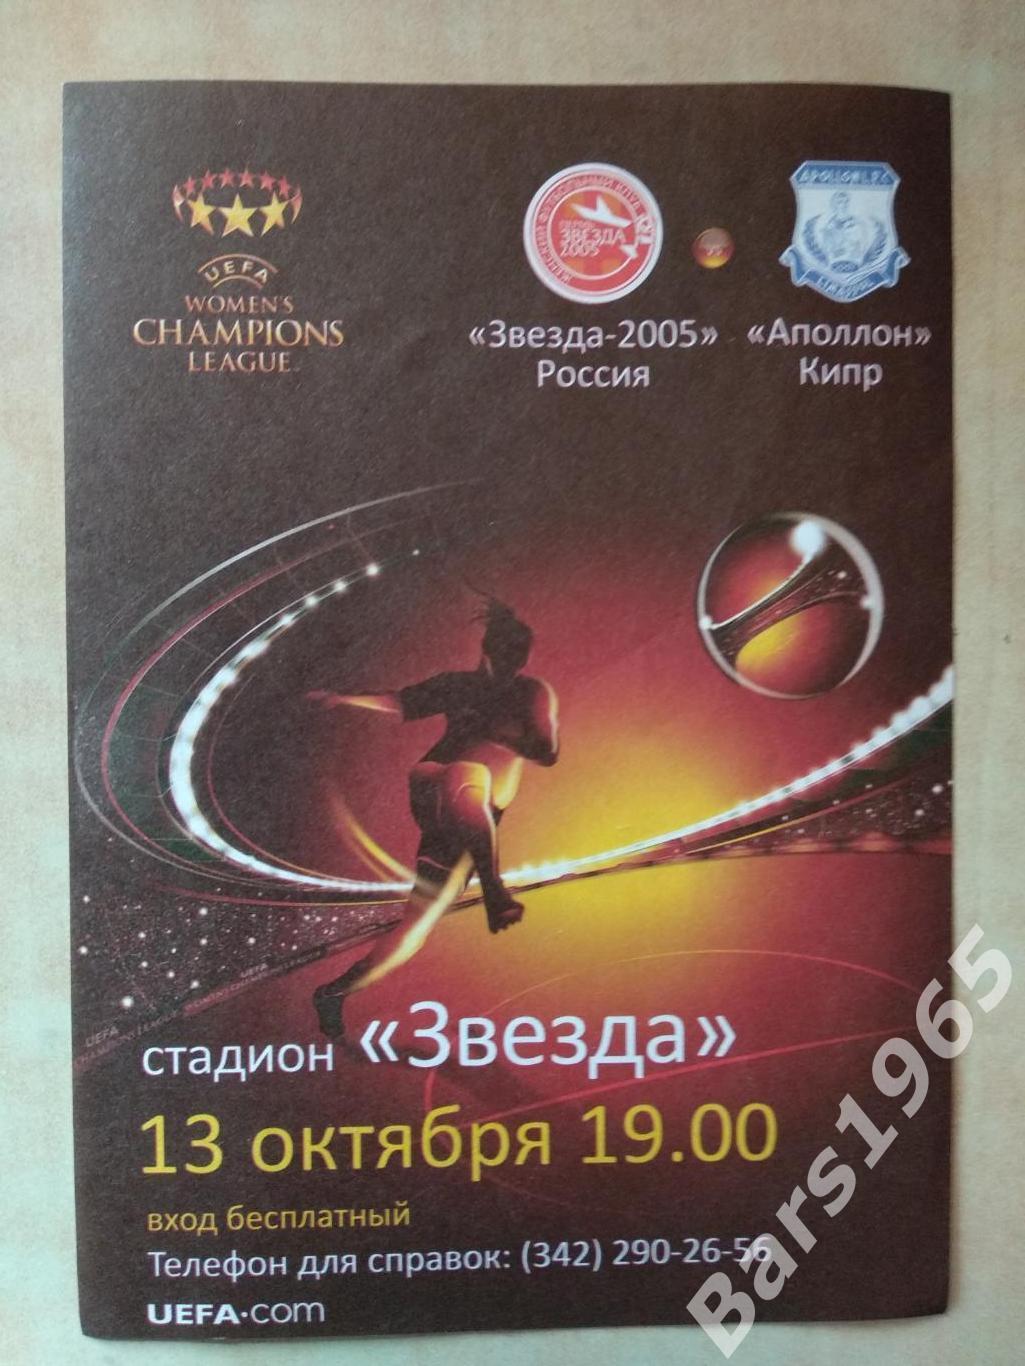 Рекламка - входной билет Звезда-2005 Пермь - Аполлон Кипр 2010 Женщины